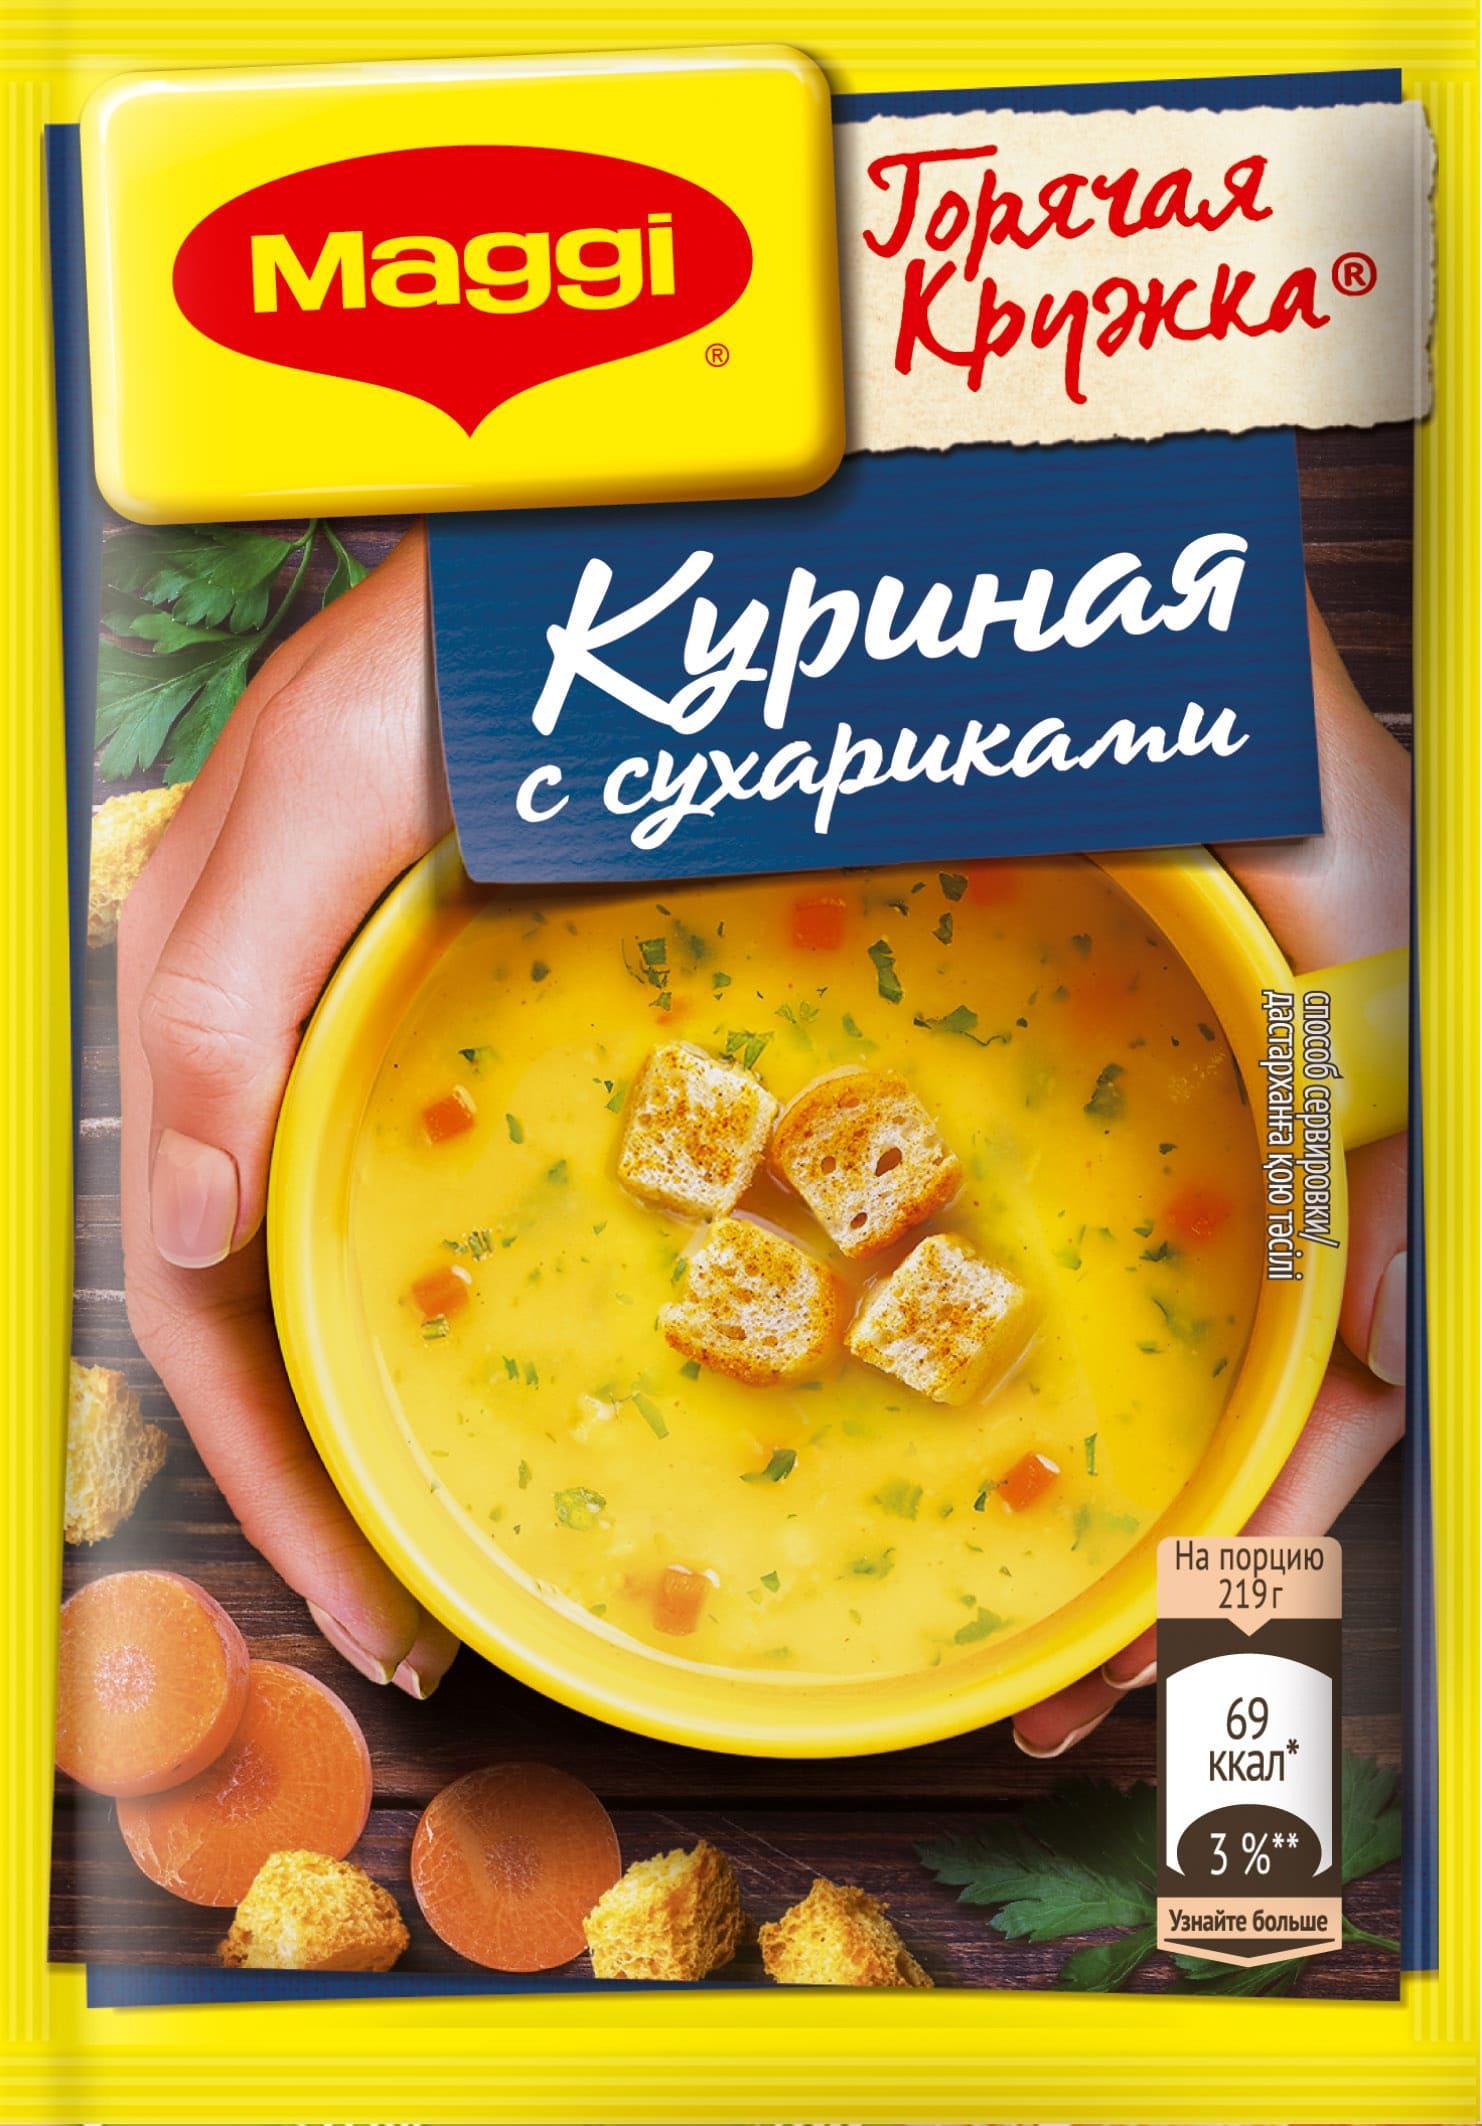 Суп MAGGI горячая кружка куриный с сухариками 19 гр., саше